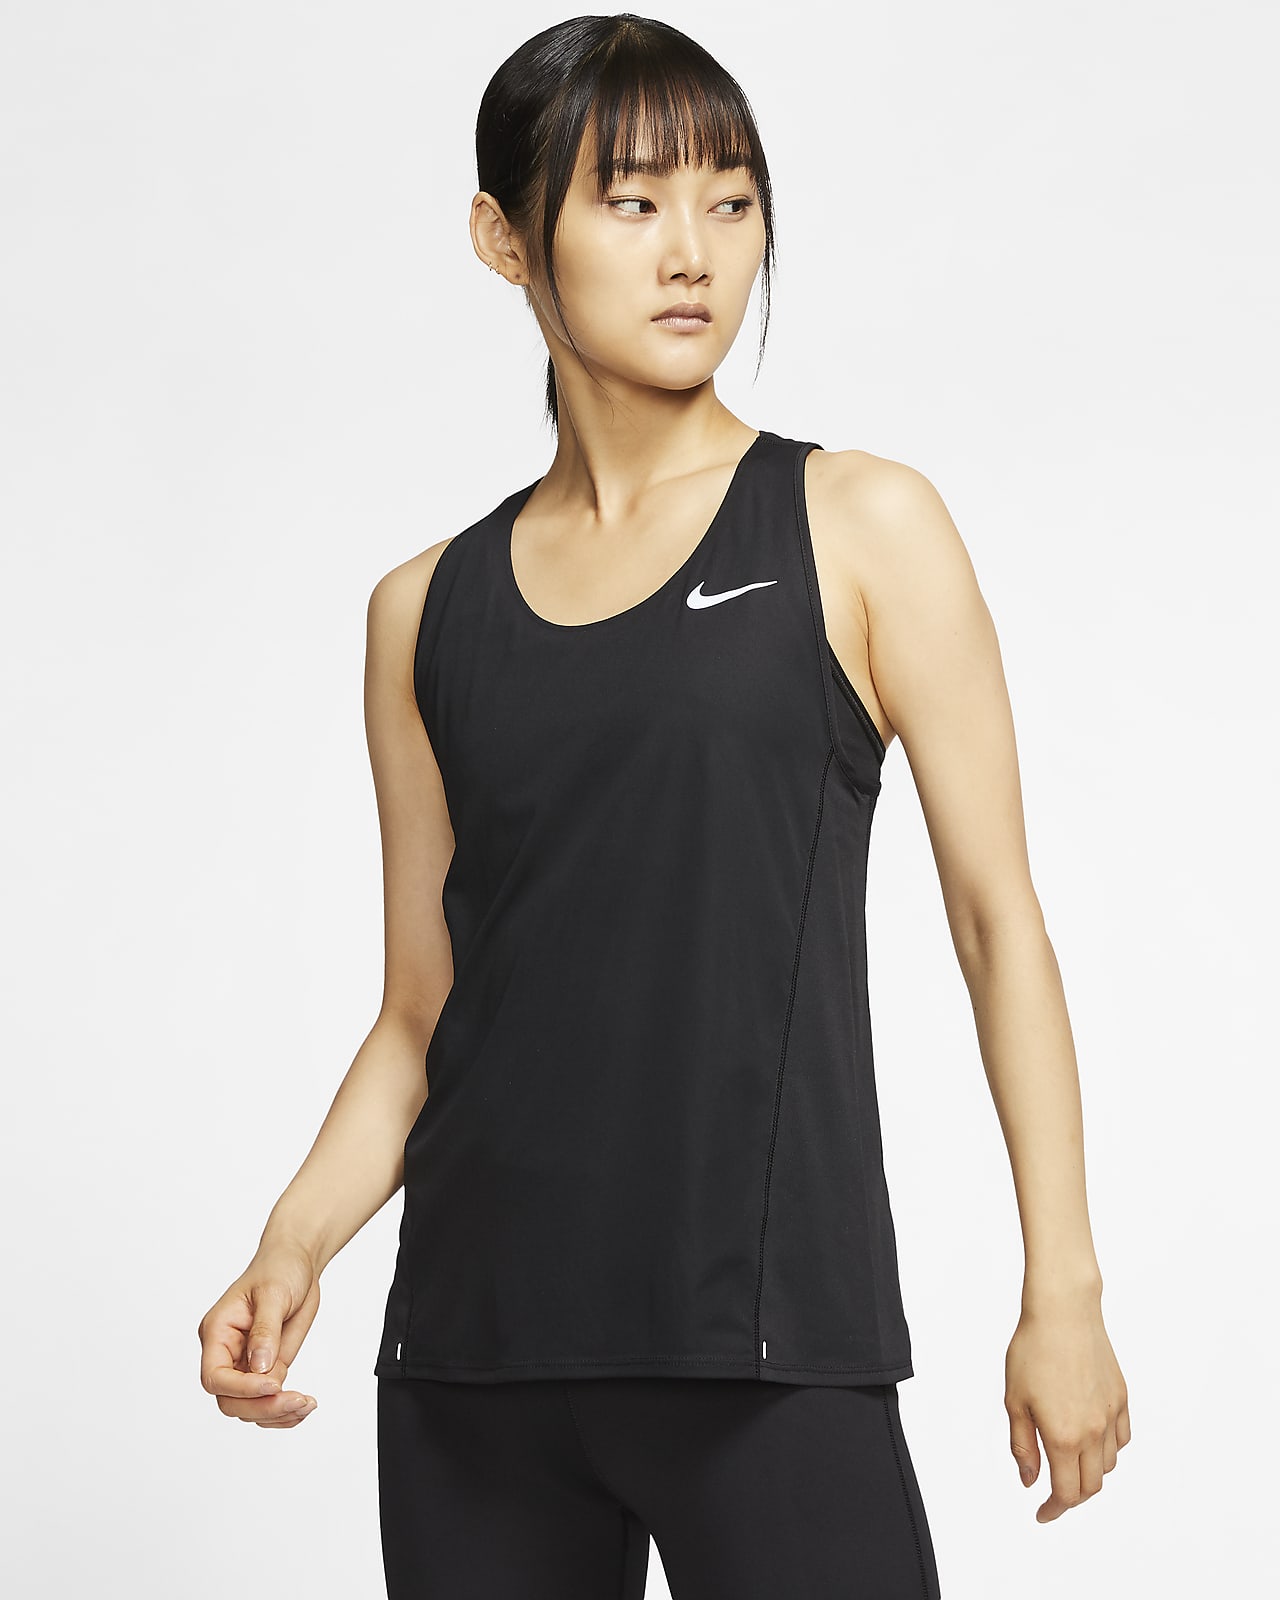 Nike Women's Running Tank